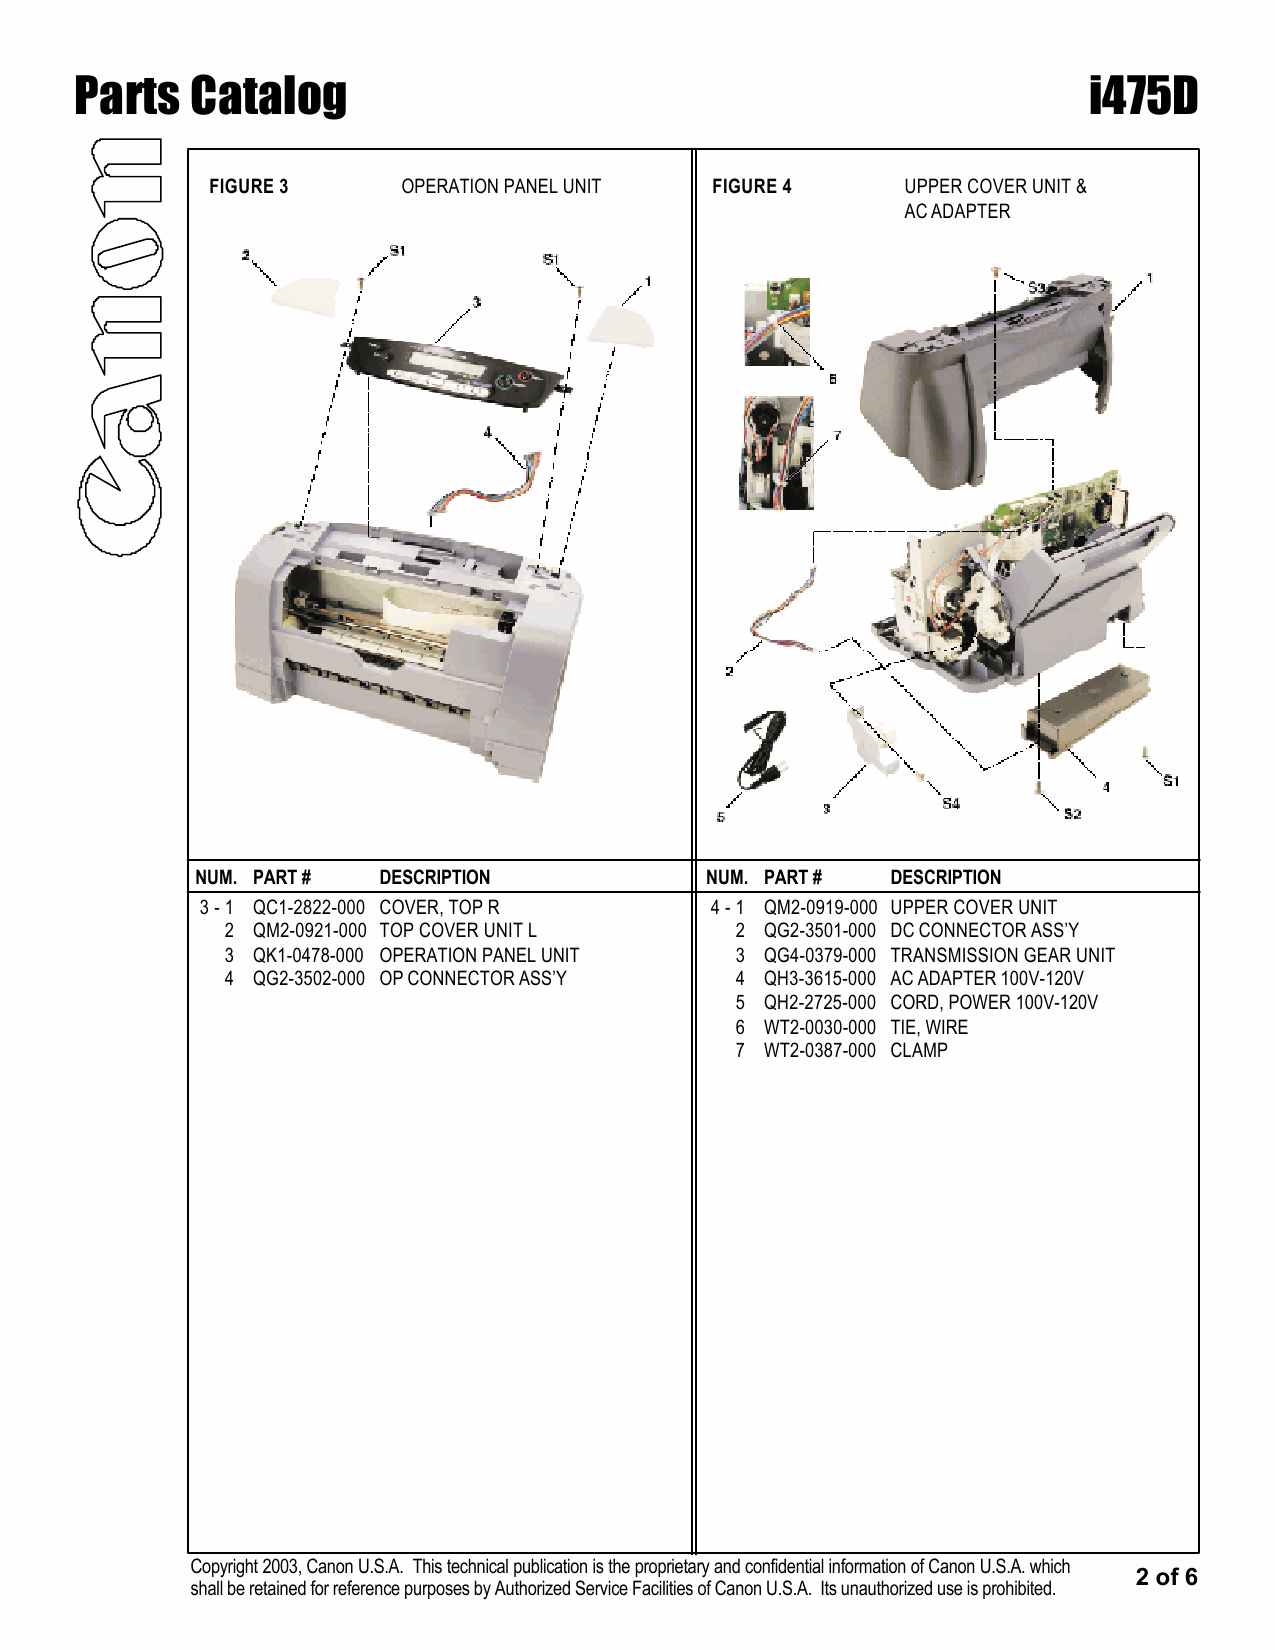 Canon PIXUS i475D Parts Catalog Manual-3